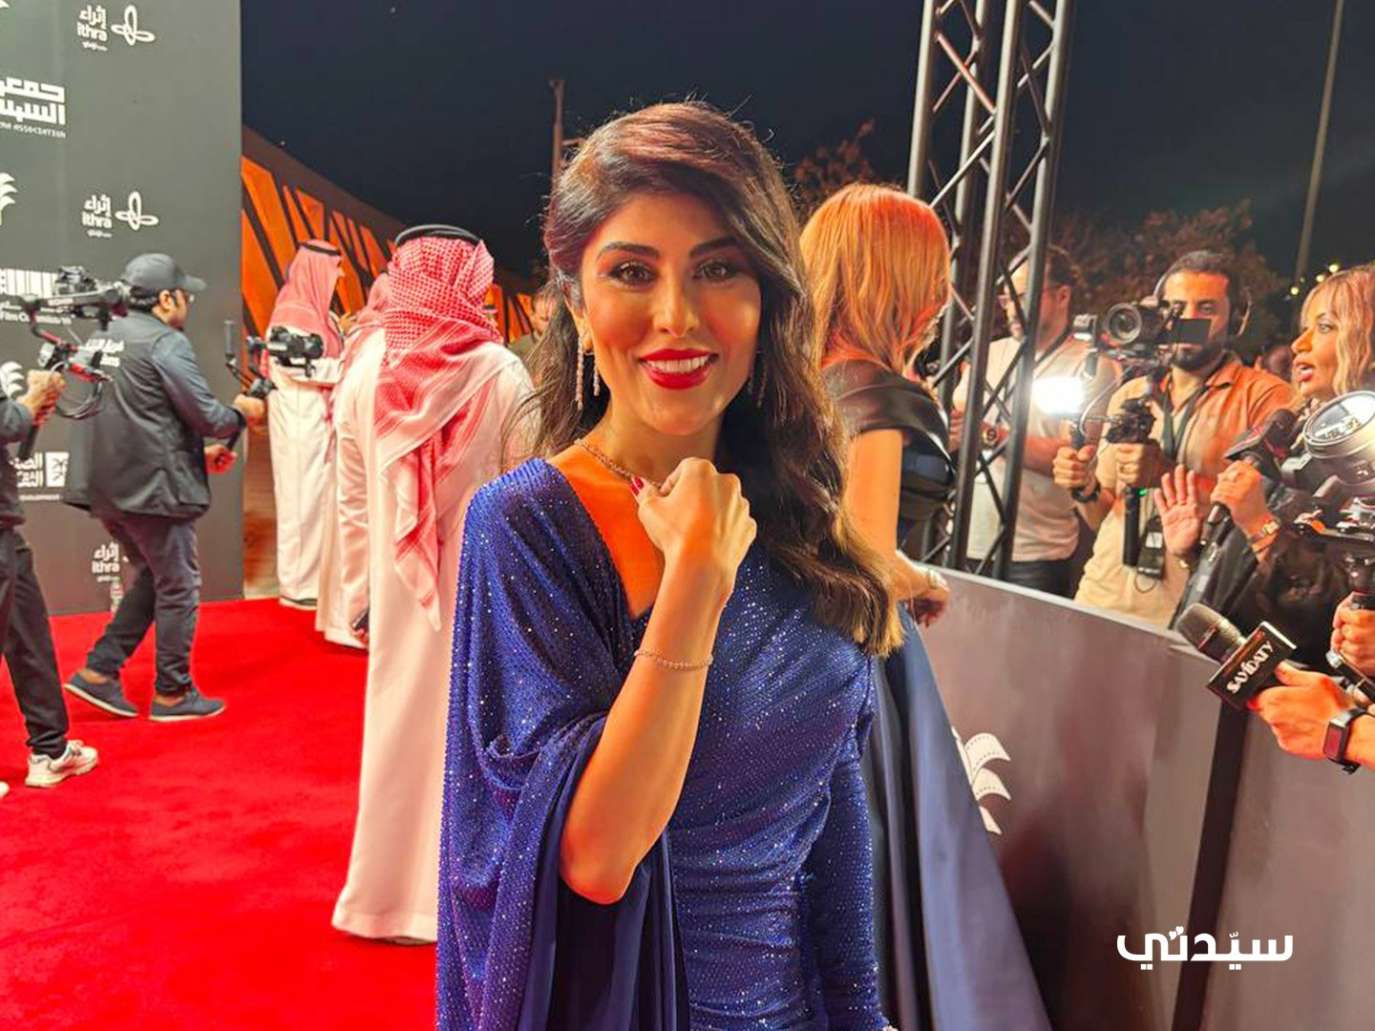 زارا البلوشي: أتمنى المشاركة بفيلم في مهرجان أفلام السعودية الدورة المقبلة.. فيديو خاص لـ 